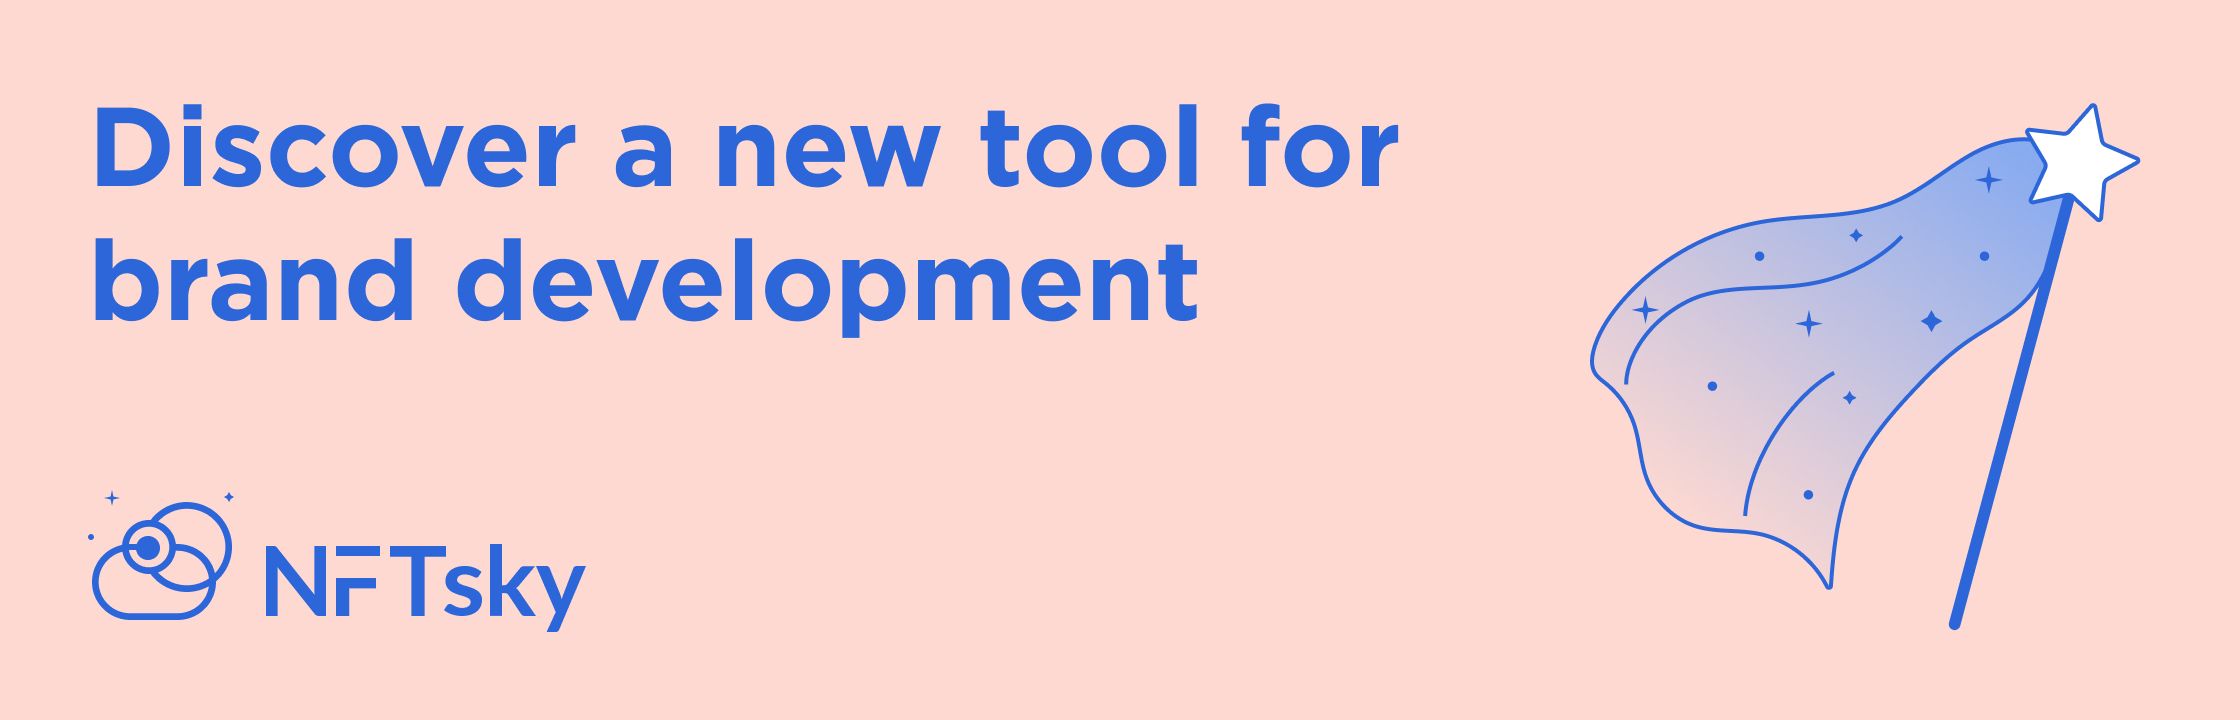 Discover a new tool for brand developmenton NFTsky